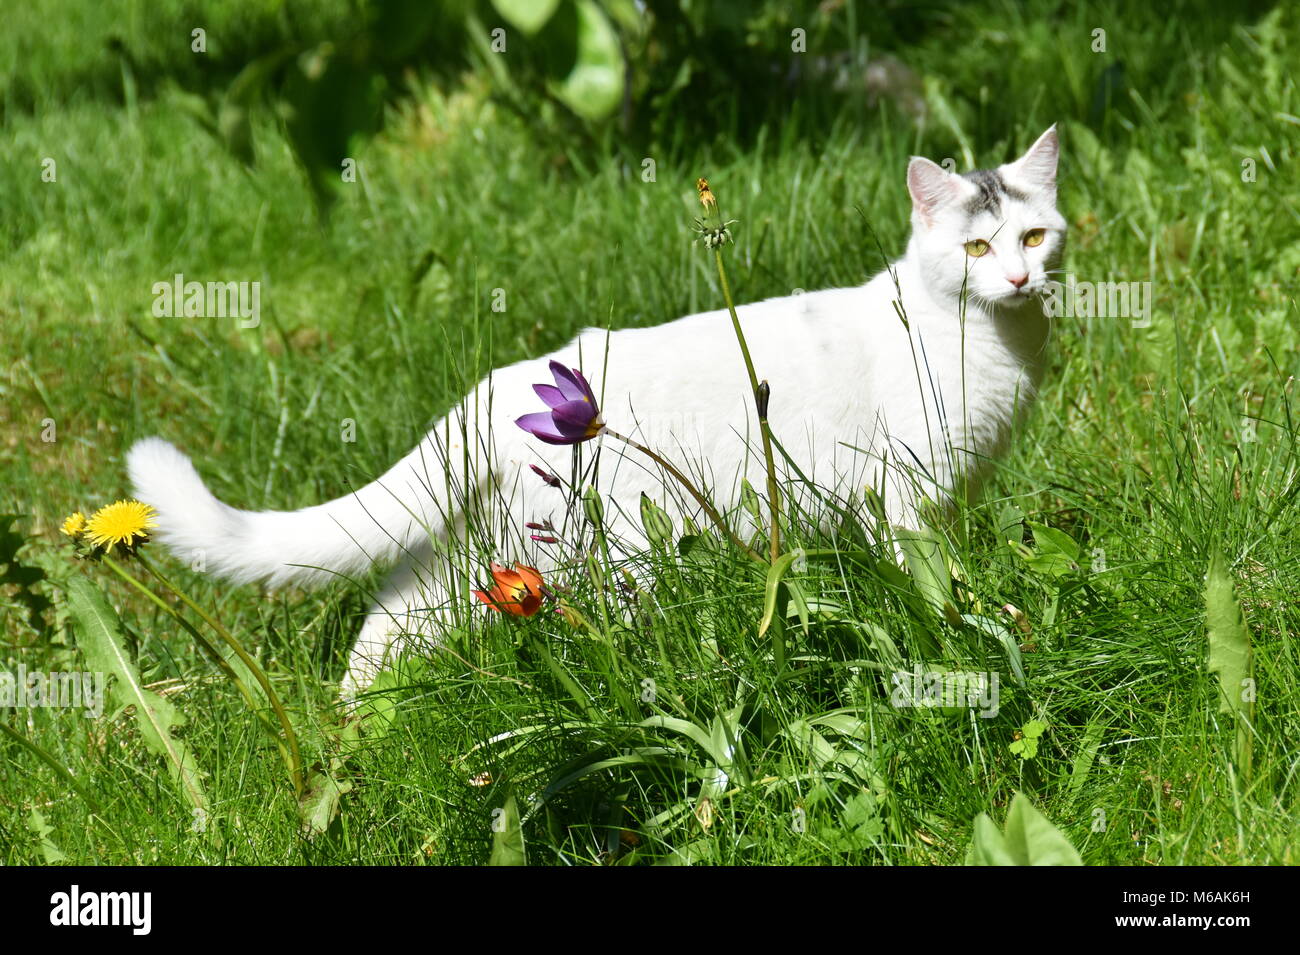 White longhair cat in piedi in un campo di fiori Foto Stock